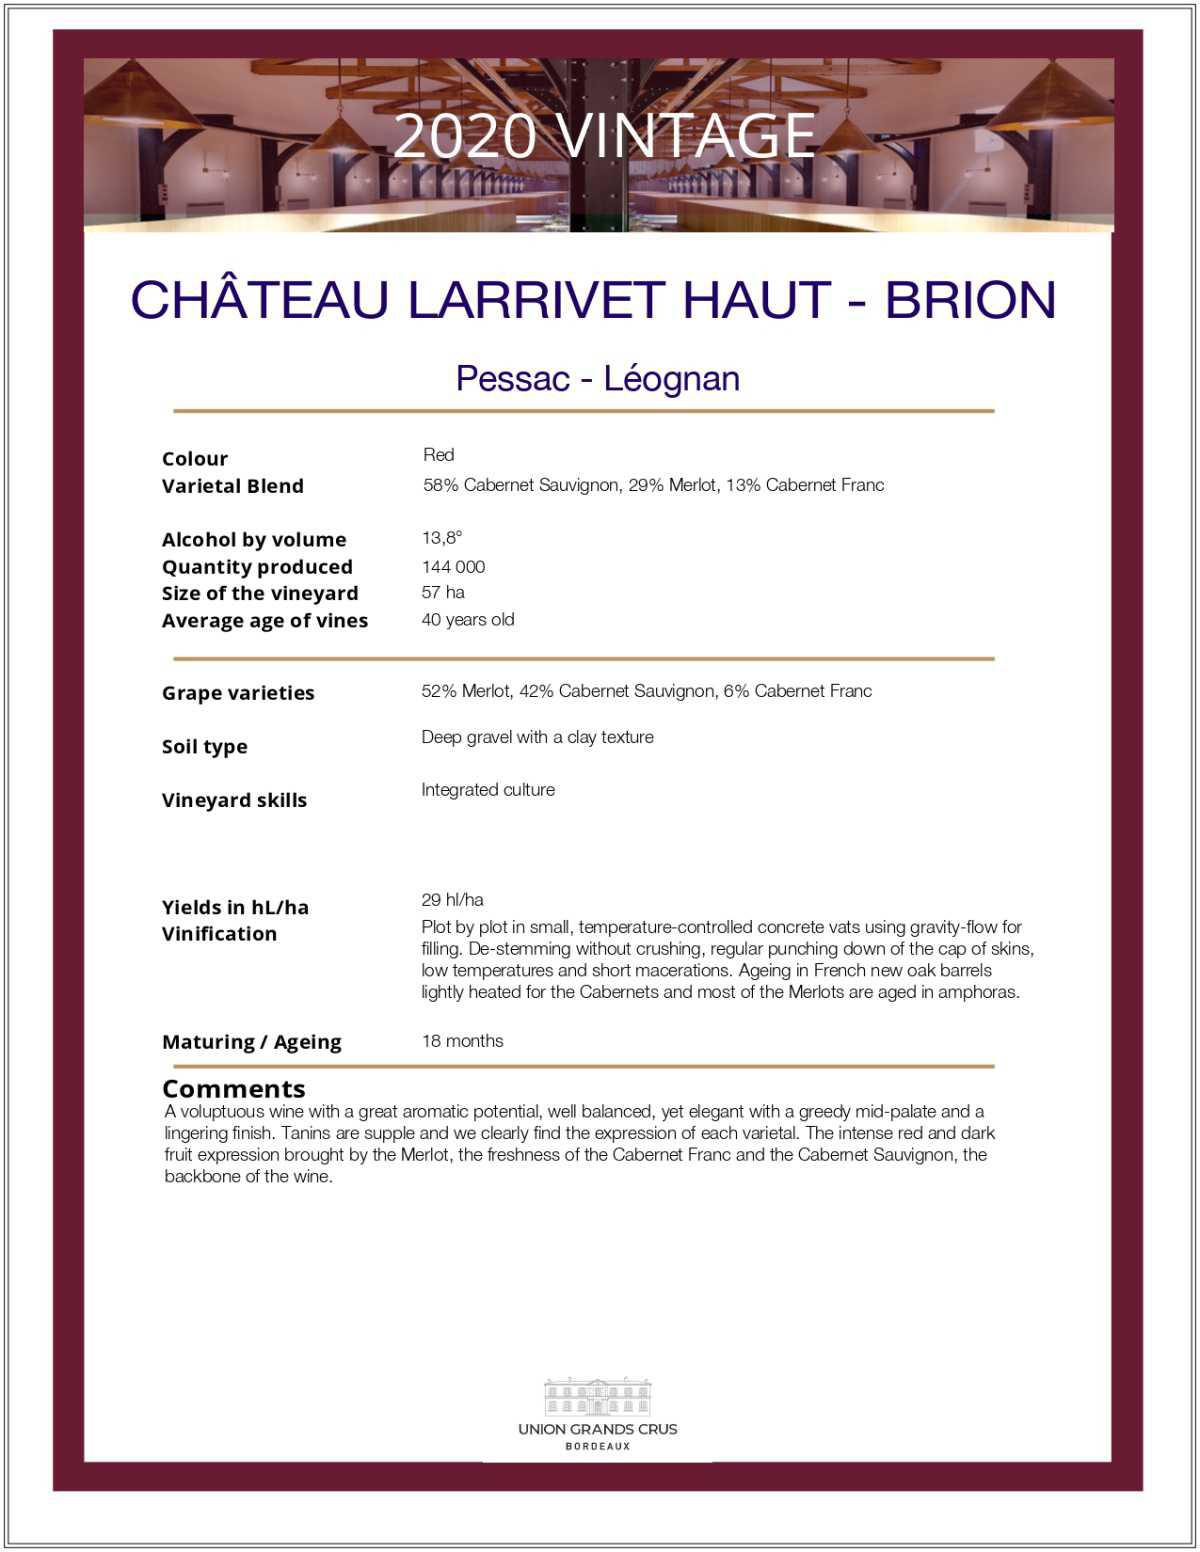 Château Larrivet Haut - Brion - Red